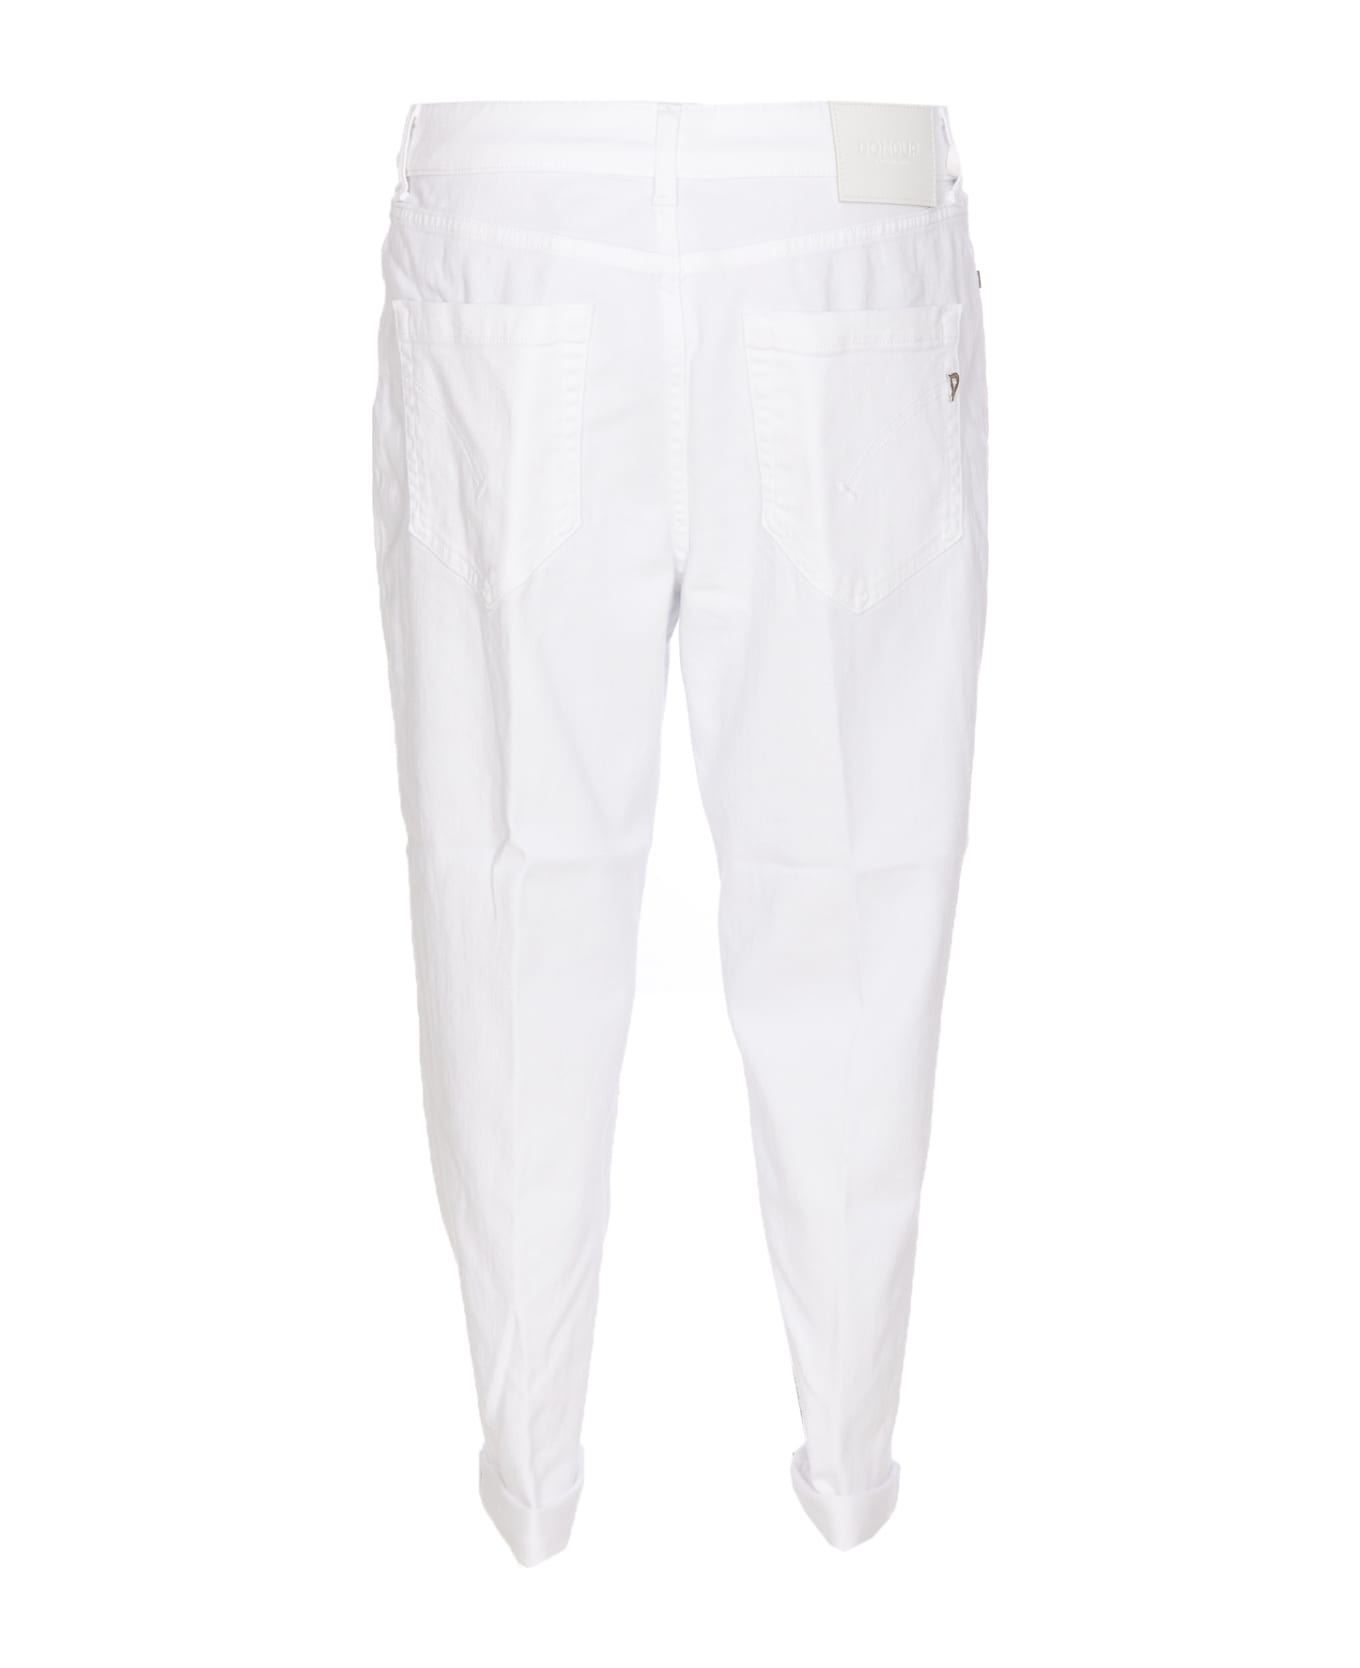 Dondup Koons Gioiello Denim Jeans - White